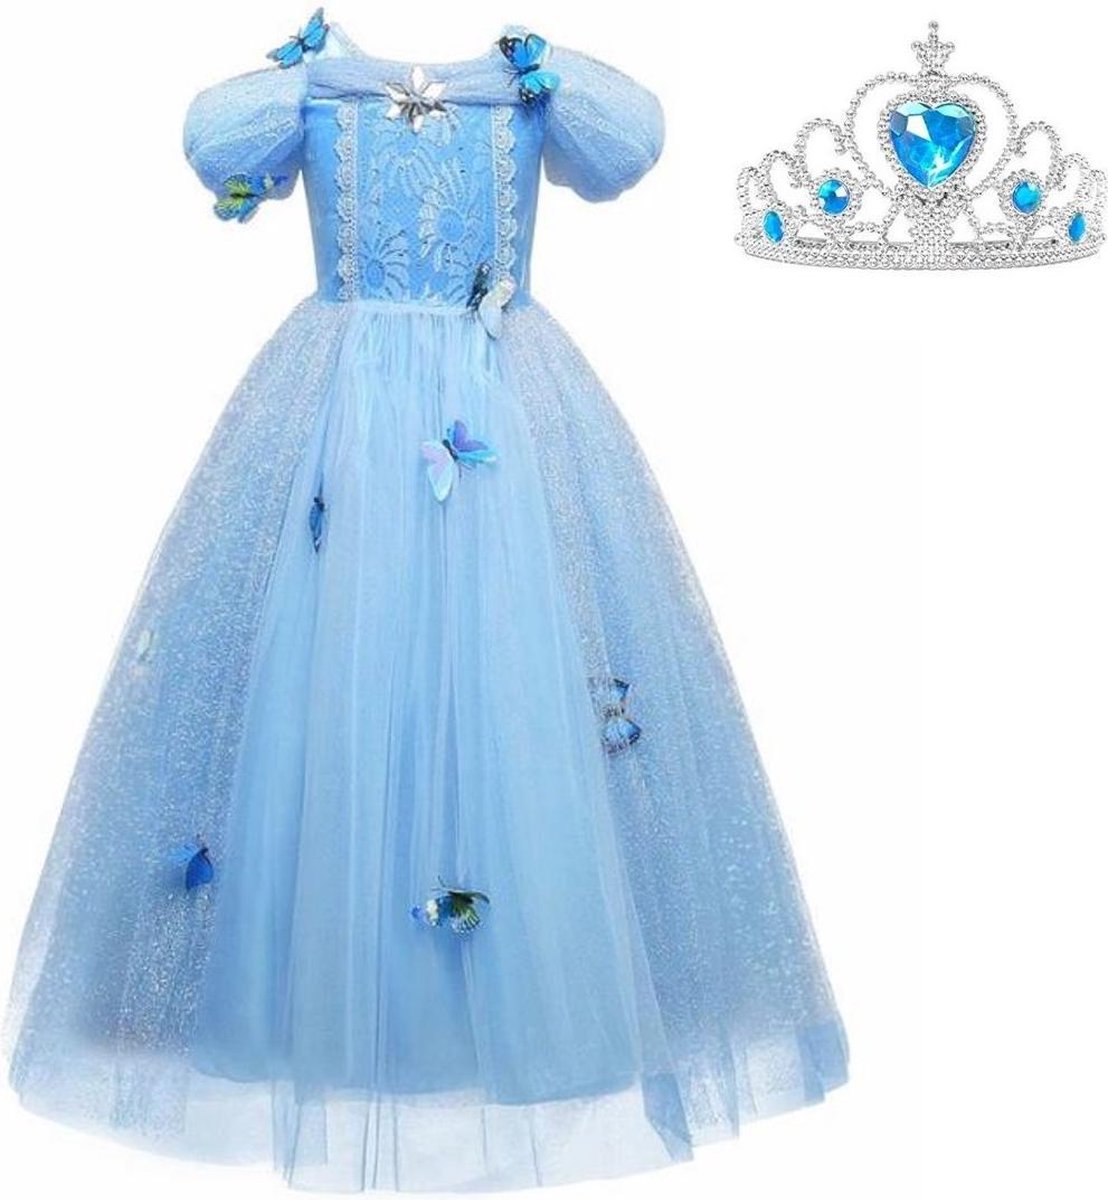 Assepoester jurk Prinsessen jurk verkleedjurk 116-122 (120) blauw Luxe met vlinders korte mouw + kroon verkleedkleding